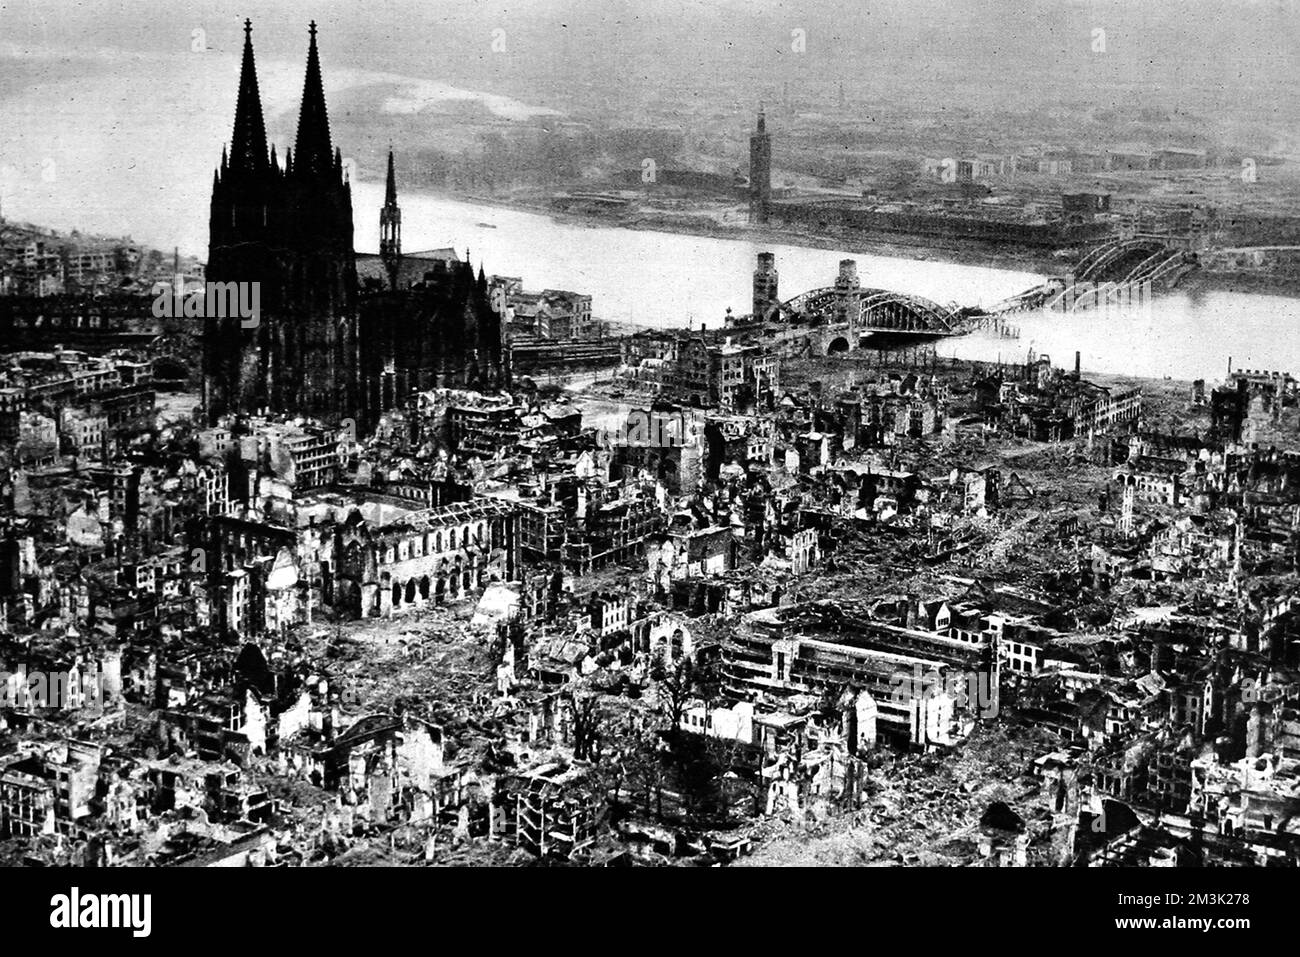 Luftaufnahme mit den Ruinen der Stadt Köln (Köln), mit dem Dom (links) und einer zerstörten Rheinbrücke (rechts), März 1945. Die Stadt wurde während des Vormarsches der amerikanischen Ersten Armee gegen die Nazi-Streitkräfte in der Gegend weitgehend zerstört. Datum: 1945 Stockfoto